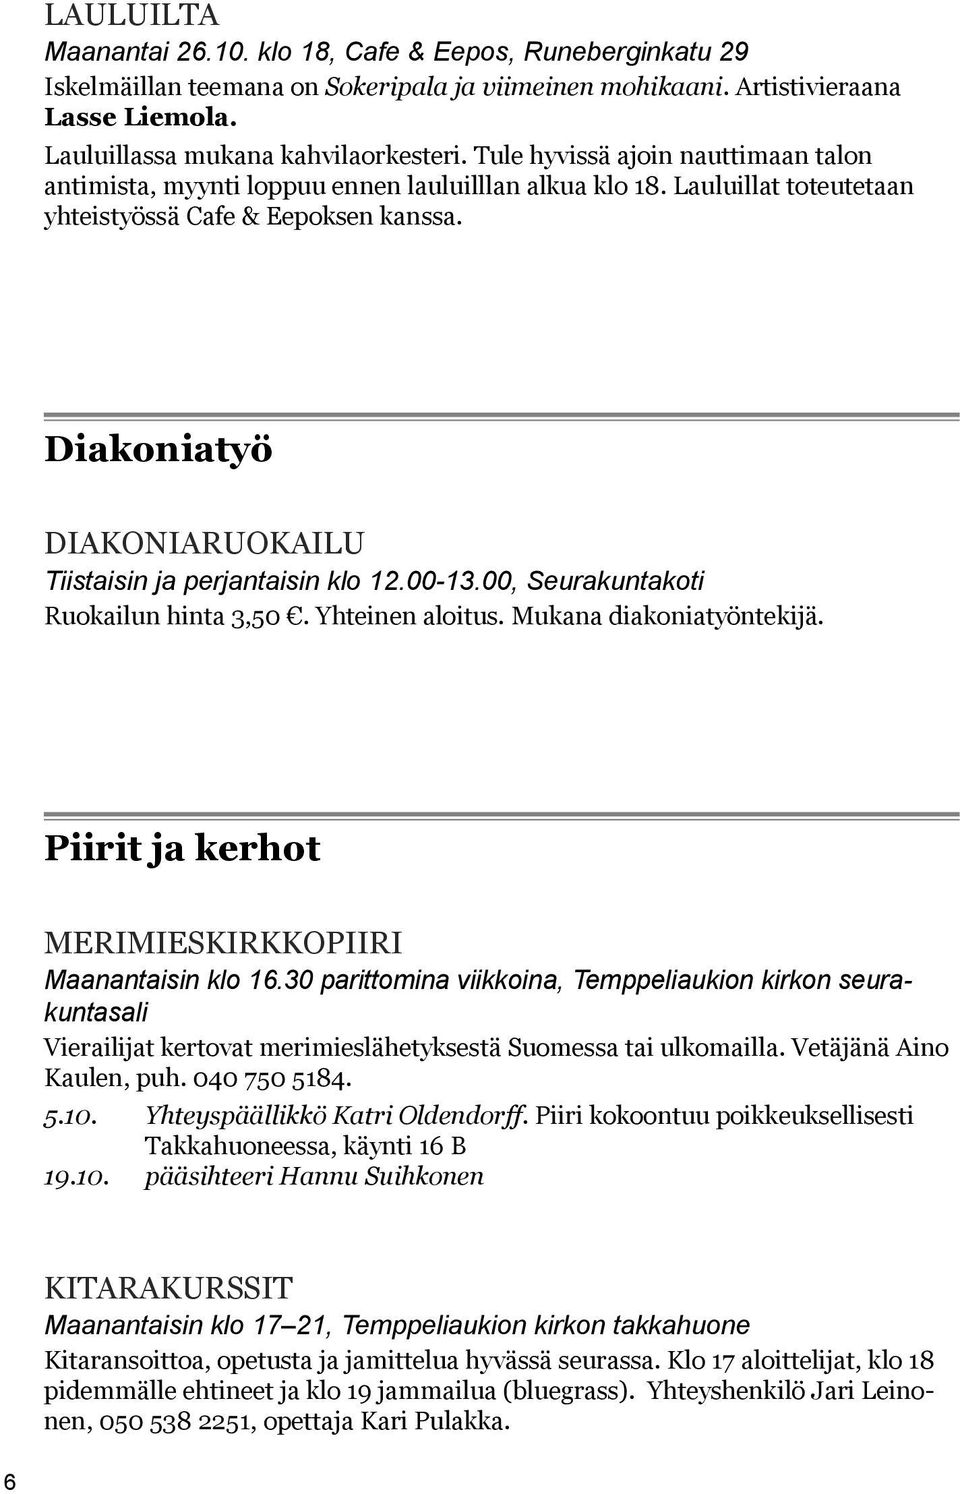 Diakoniatyö Diakoniaruokailu Tiistaisin ja perjantaisin klo 12.00-13.00, Seurakuntakoti Ruokailun hinta 3,50. Yhteinen aloitus. Mukana diakoniatyöntekijä.